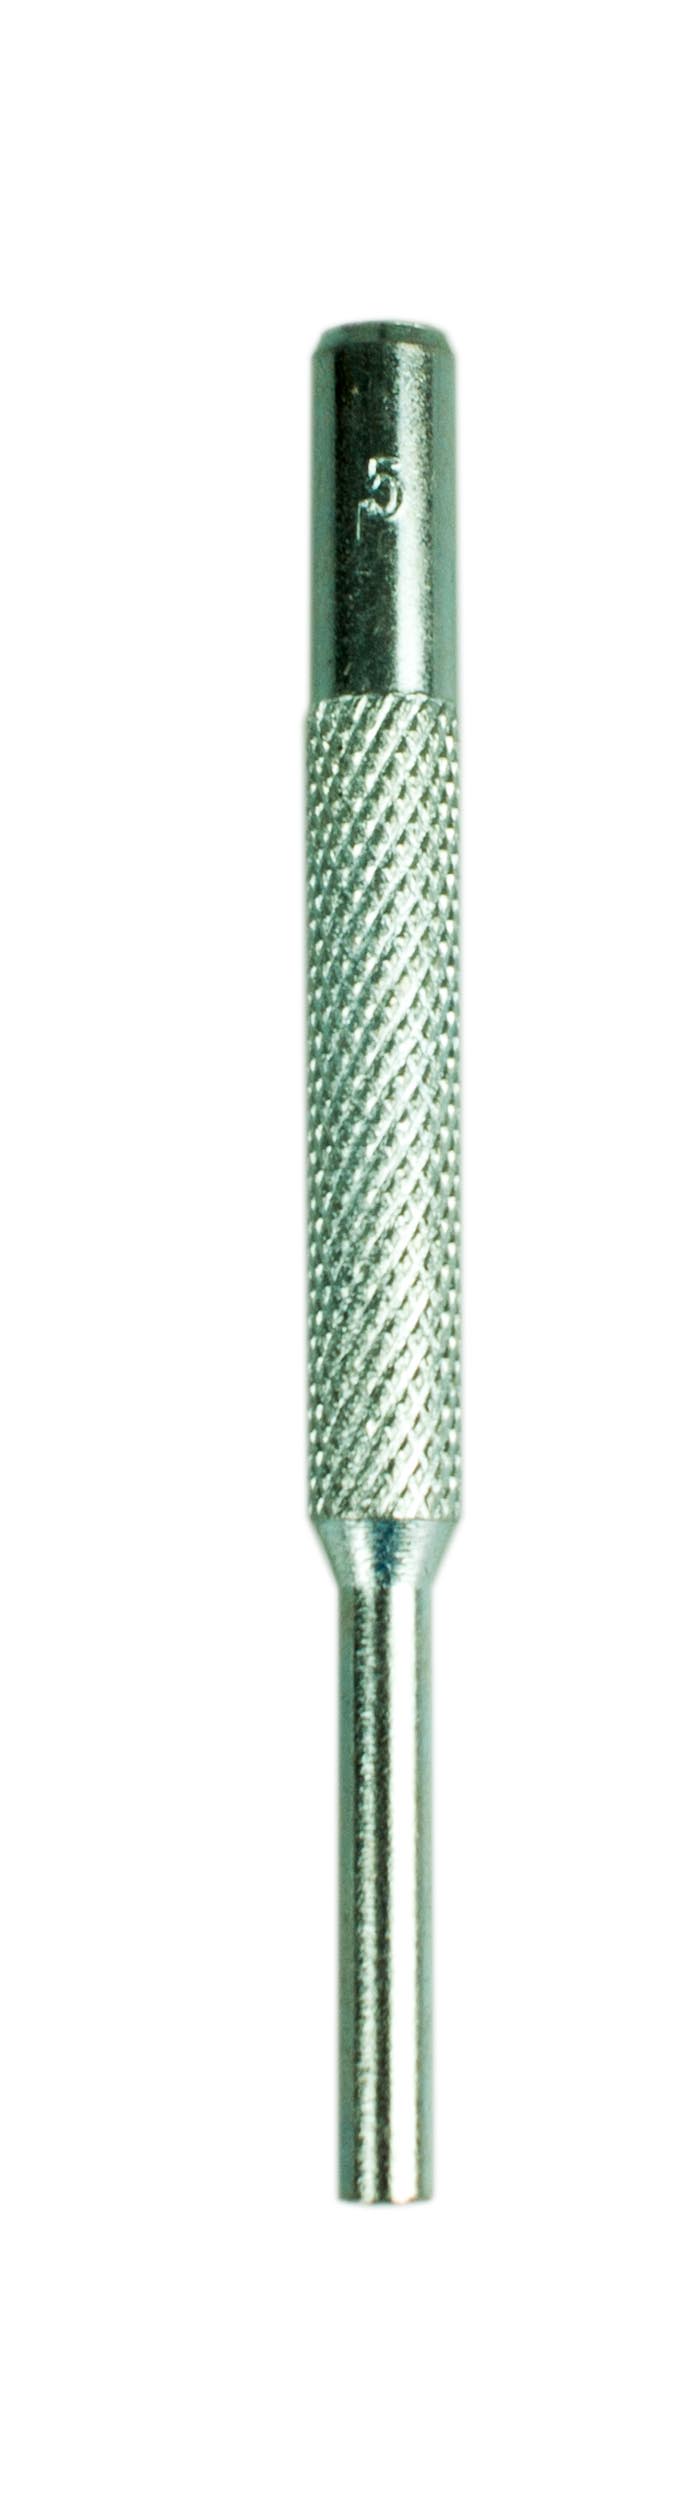 Chasse-goupille Ø 5 mm - FISCHER DAREX